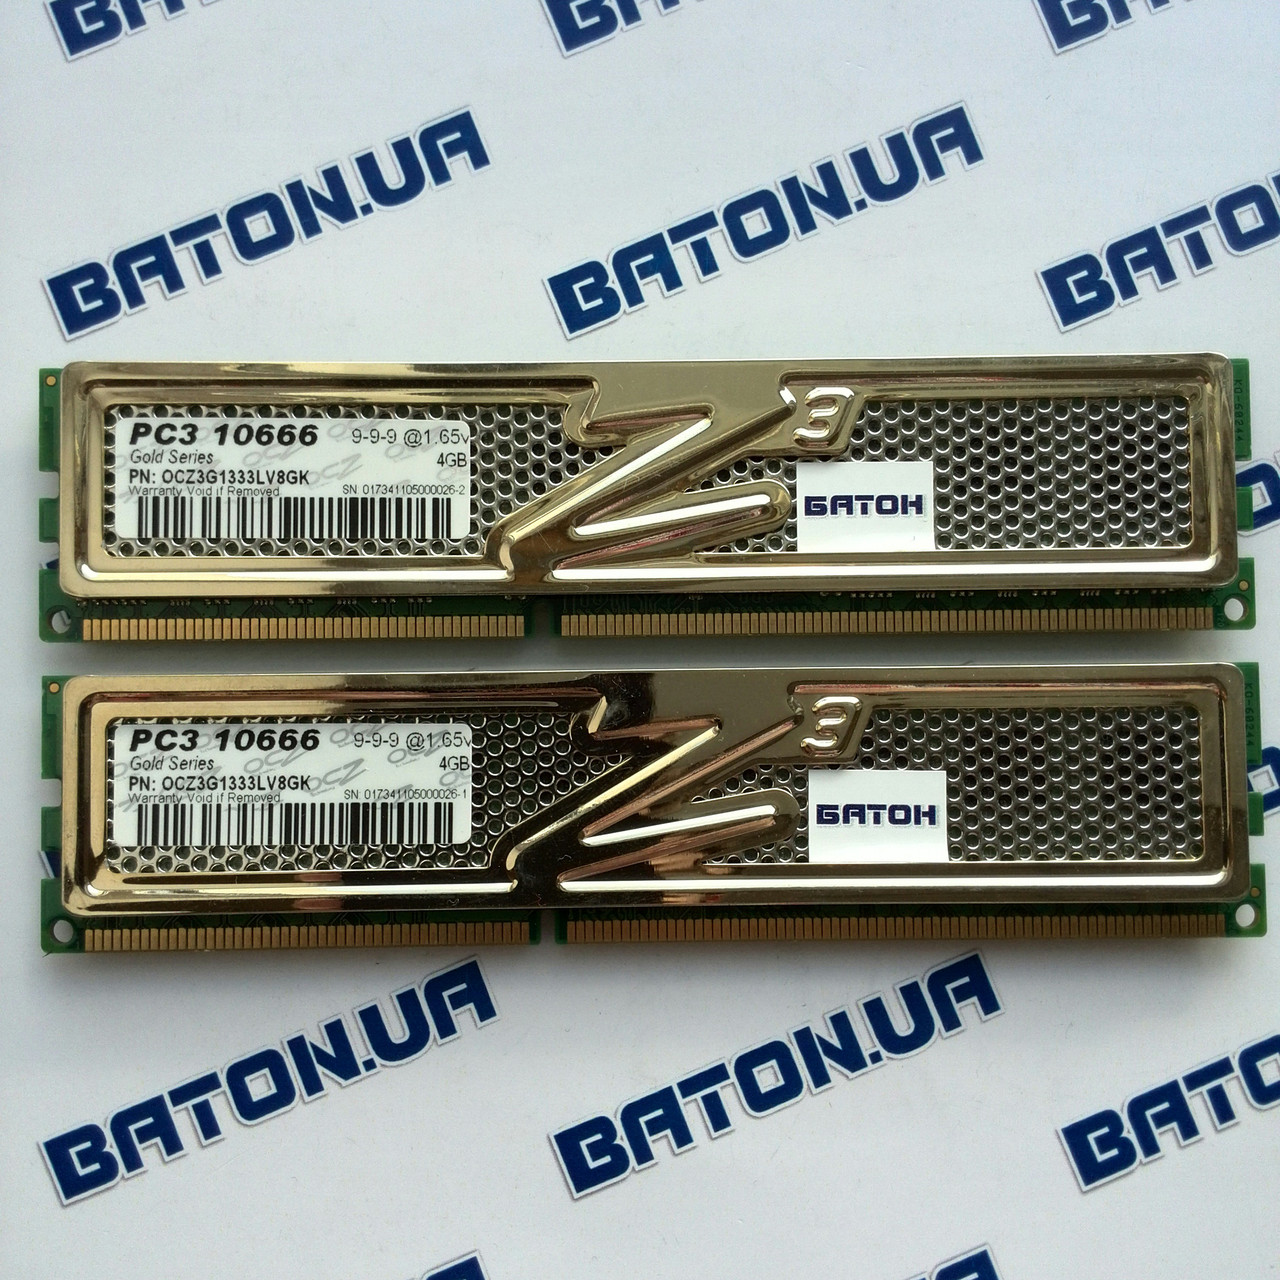 Игровая оперативная память OCZ Gold DDR3 8Gb KIT of 2 1333MHz PC3 10600U CL9 (OCZ3G1333LV8GK)